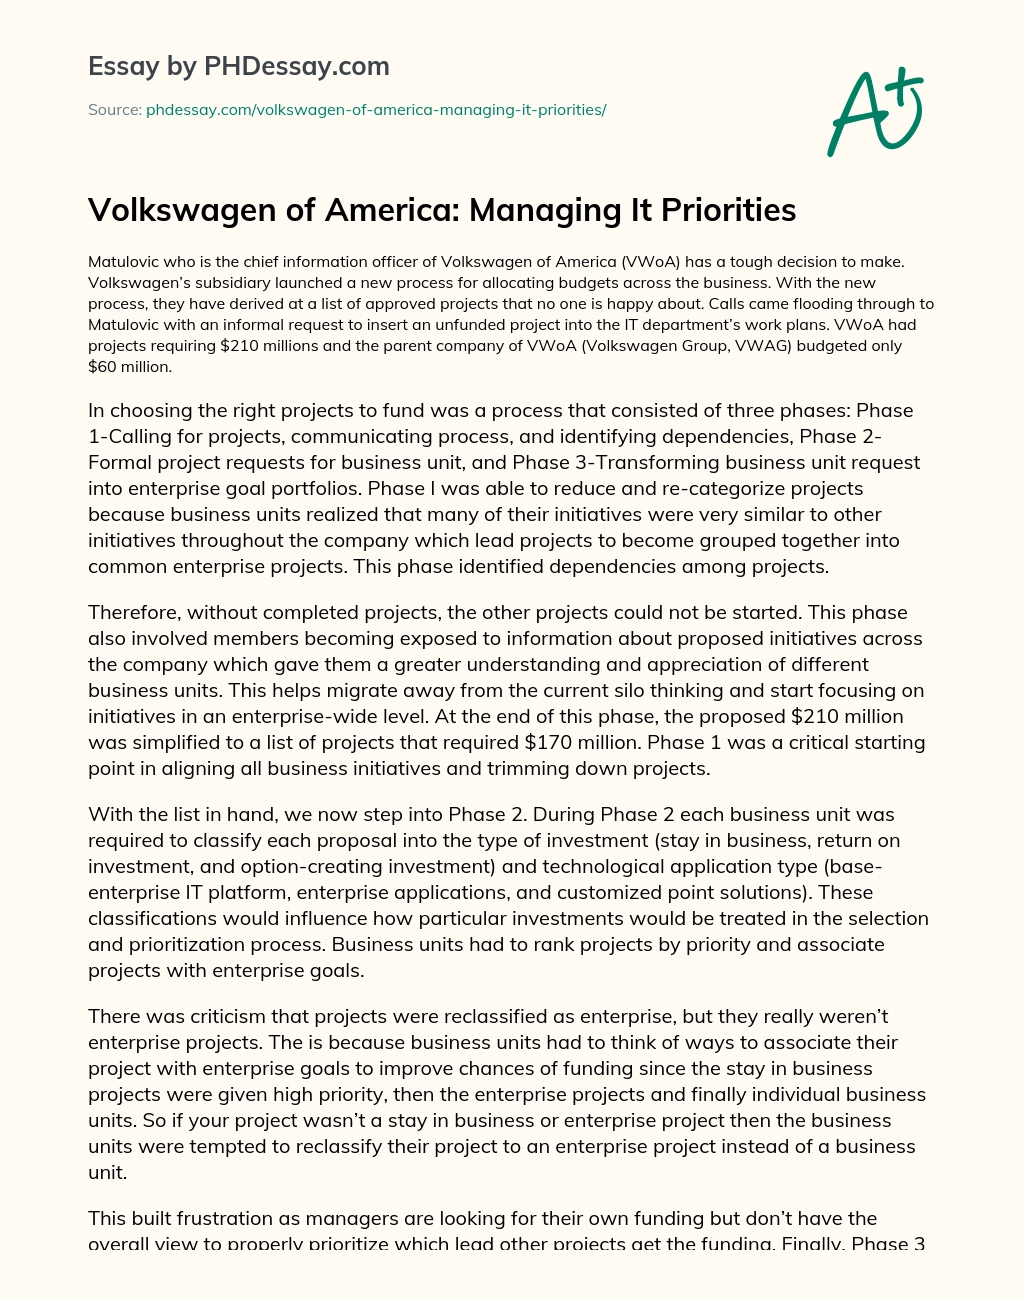 Volkswagen of America: Managing It Priorities essay